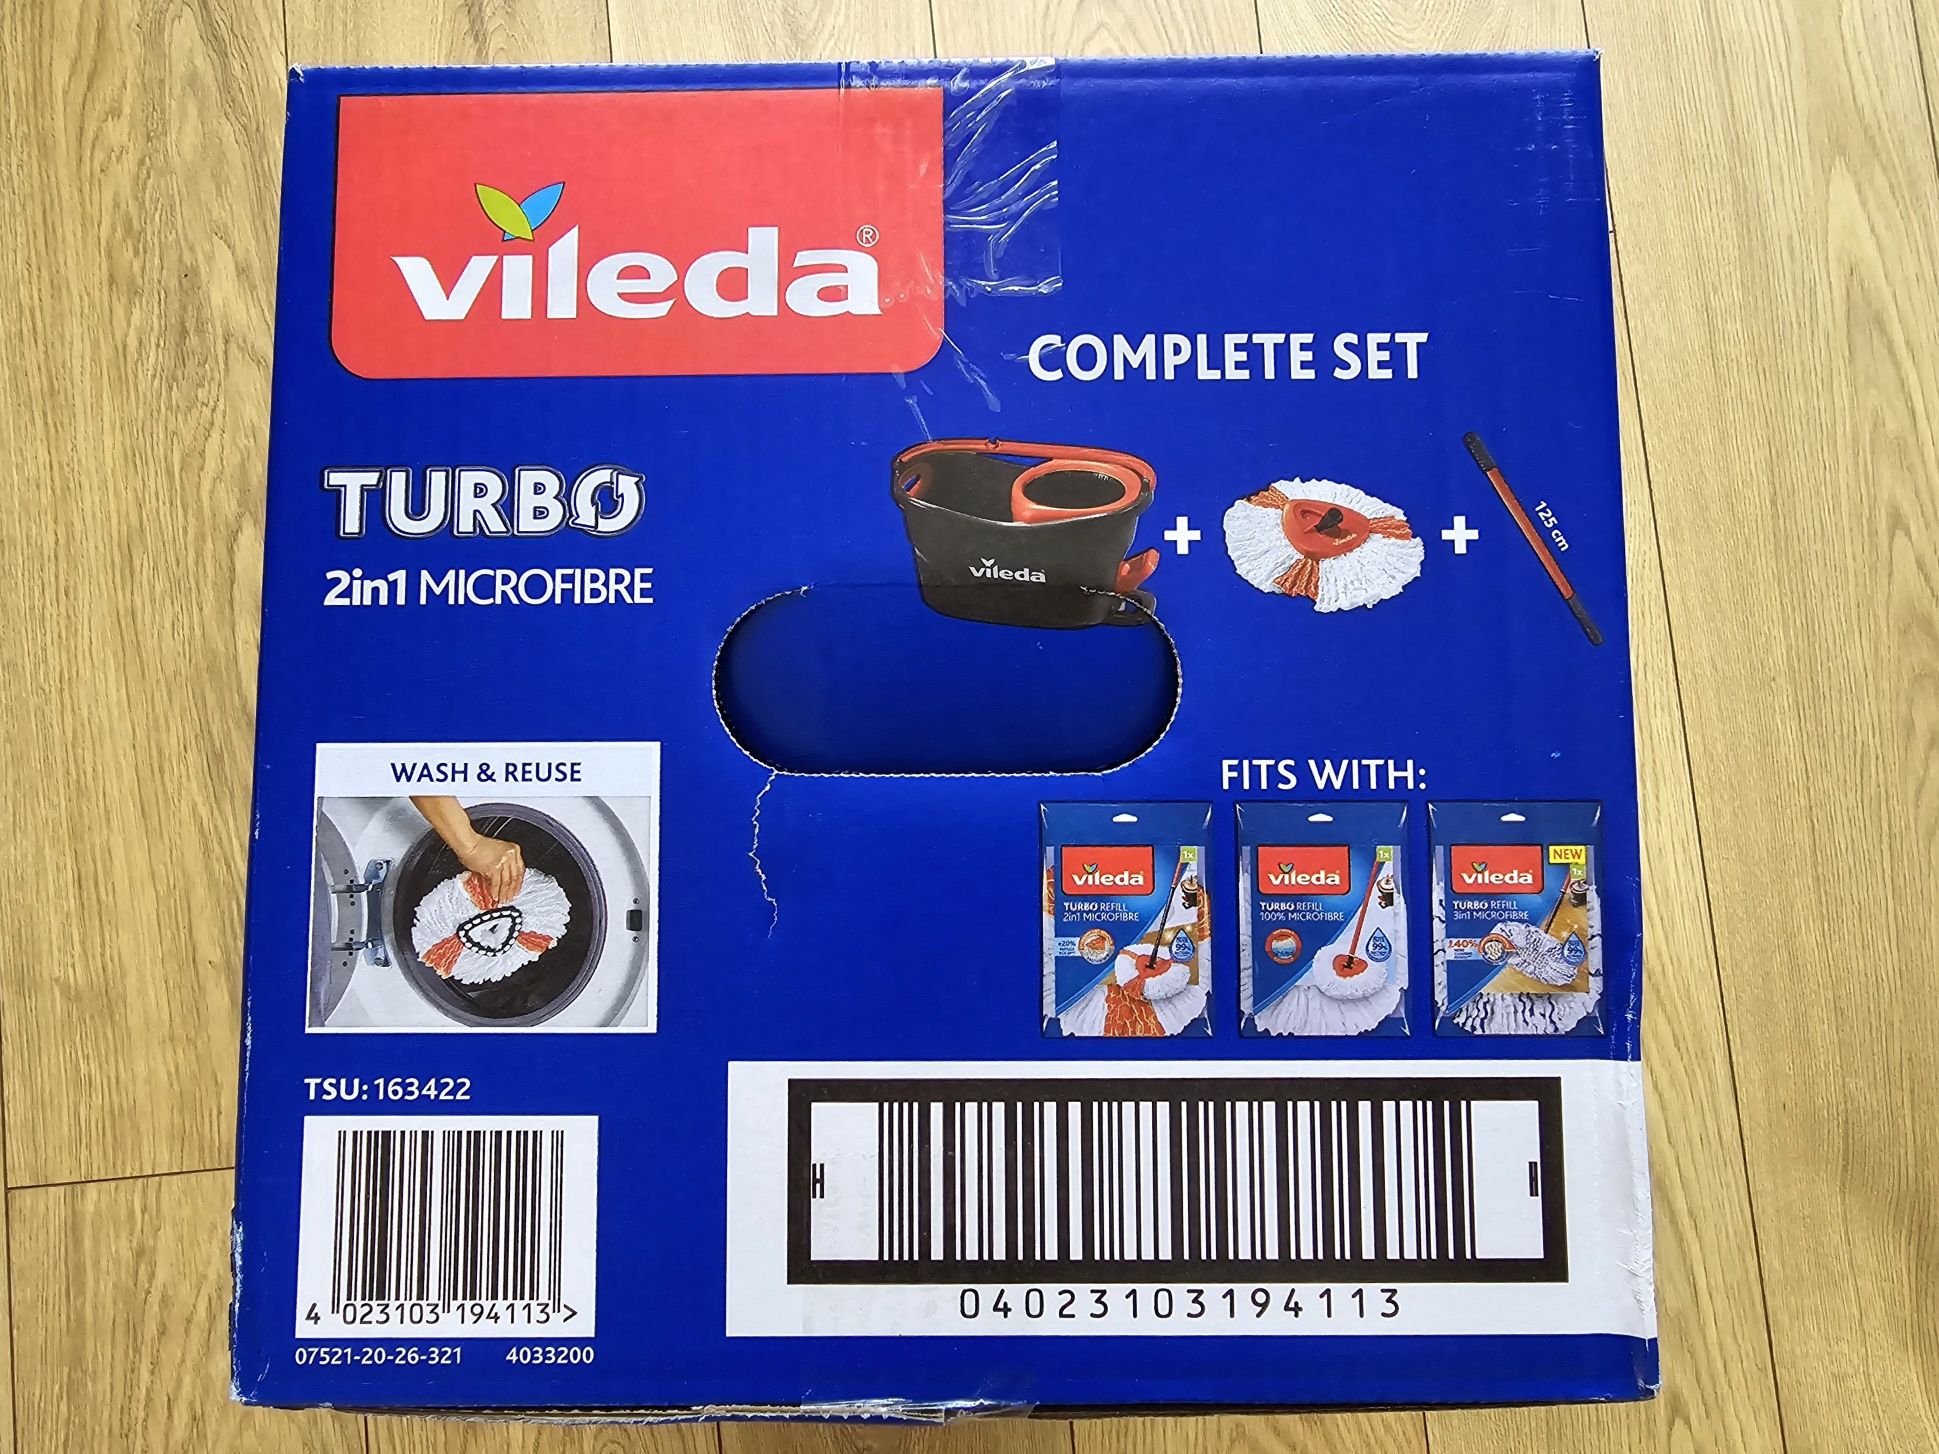 Mop z wyciskaczem Vileda Turbo 2w1 + Ajax microfibre mop okrągły

105